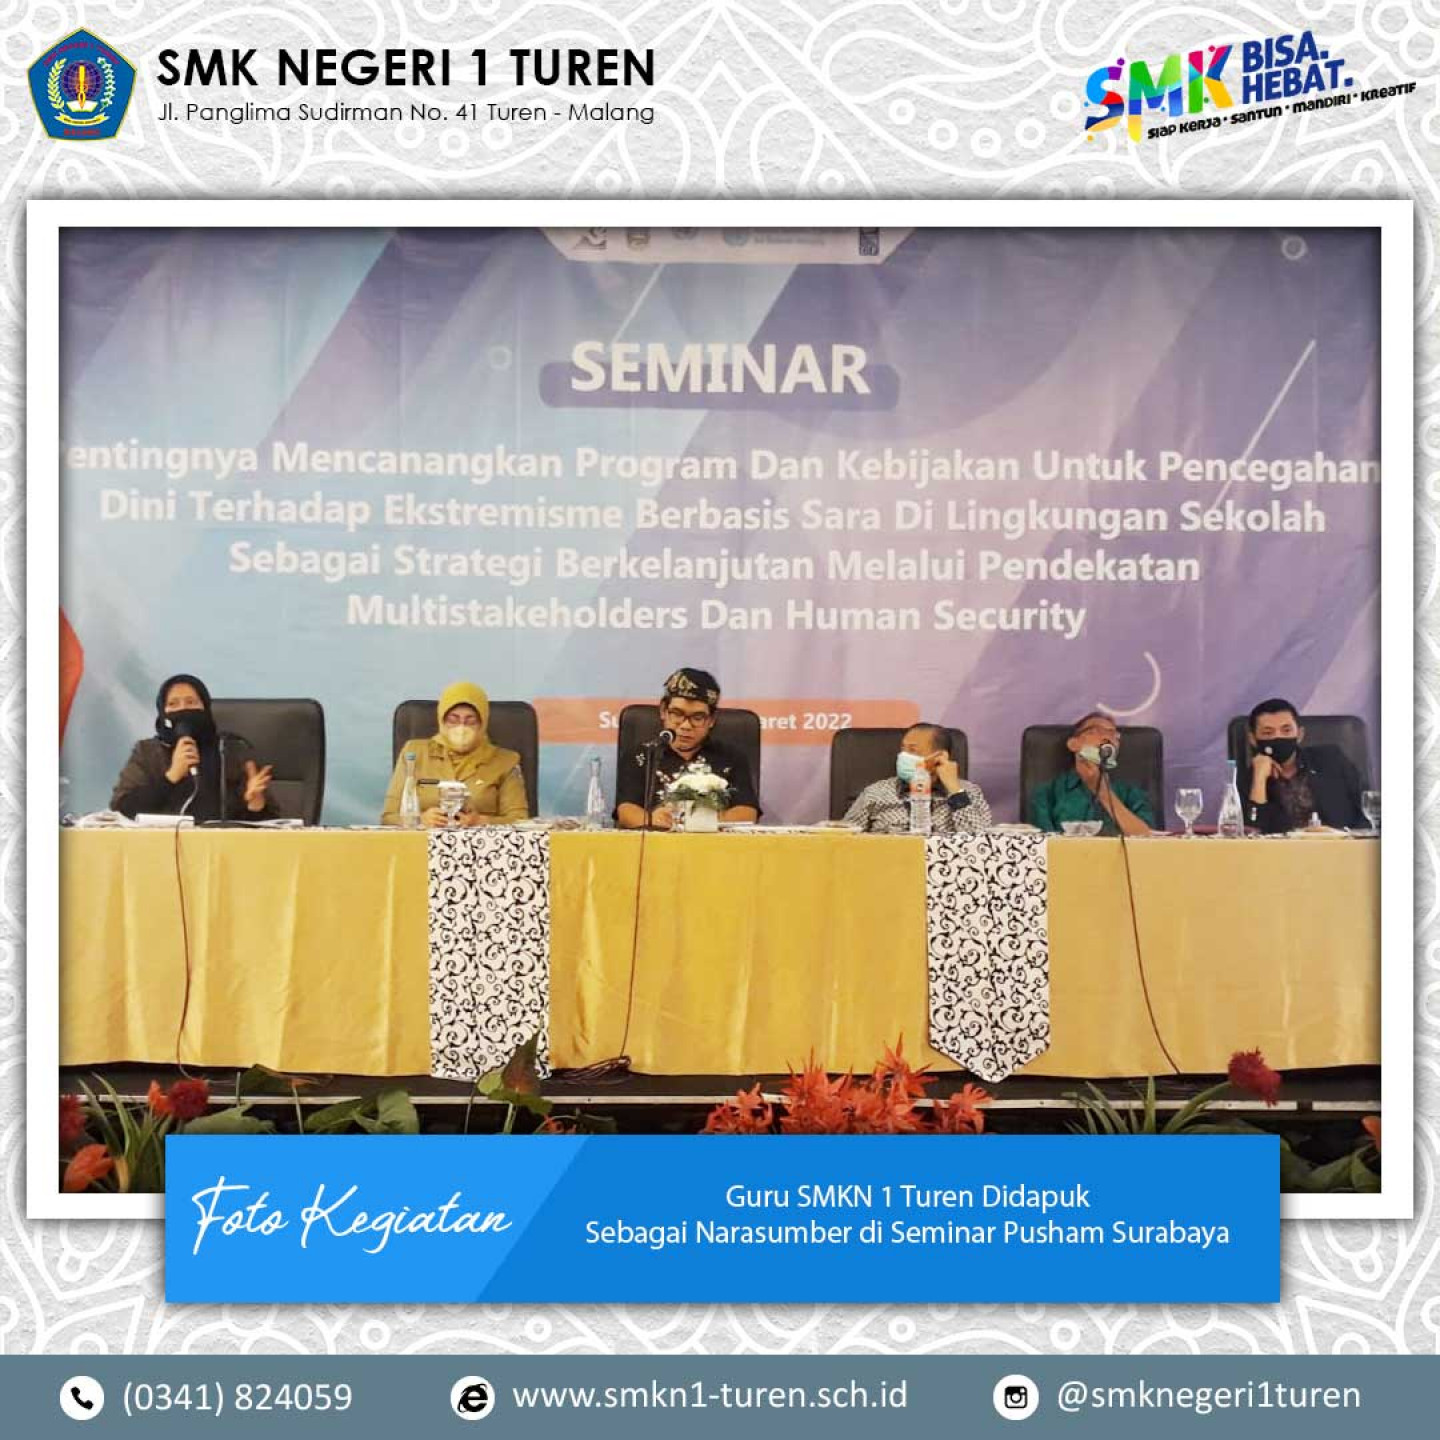 Guru SMKN 1 Turen Didapuk Sebagai Narasumber di Seminar Pusham Surabaya